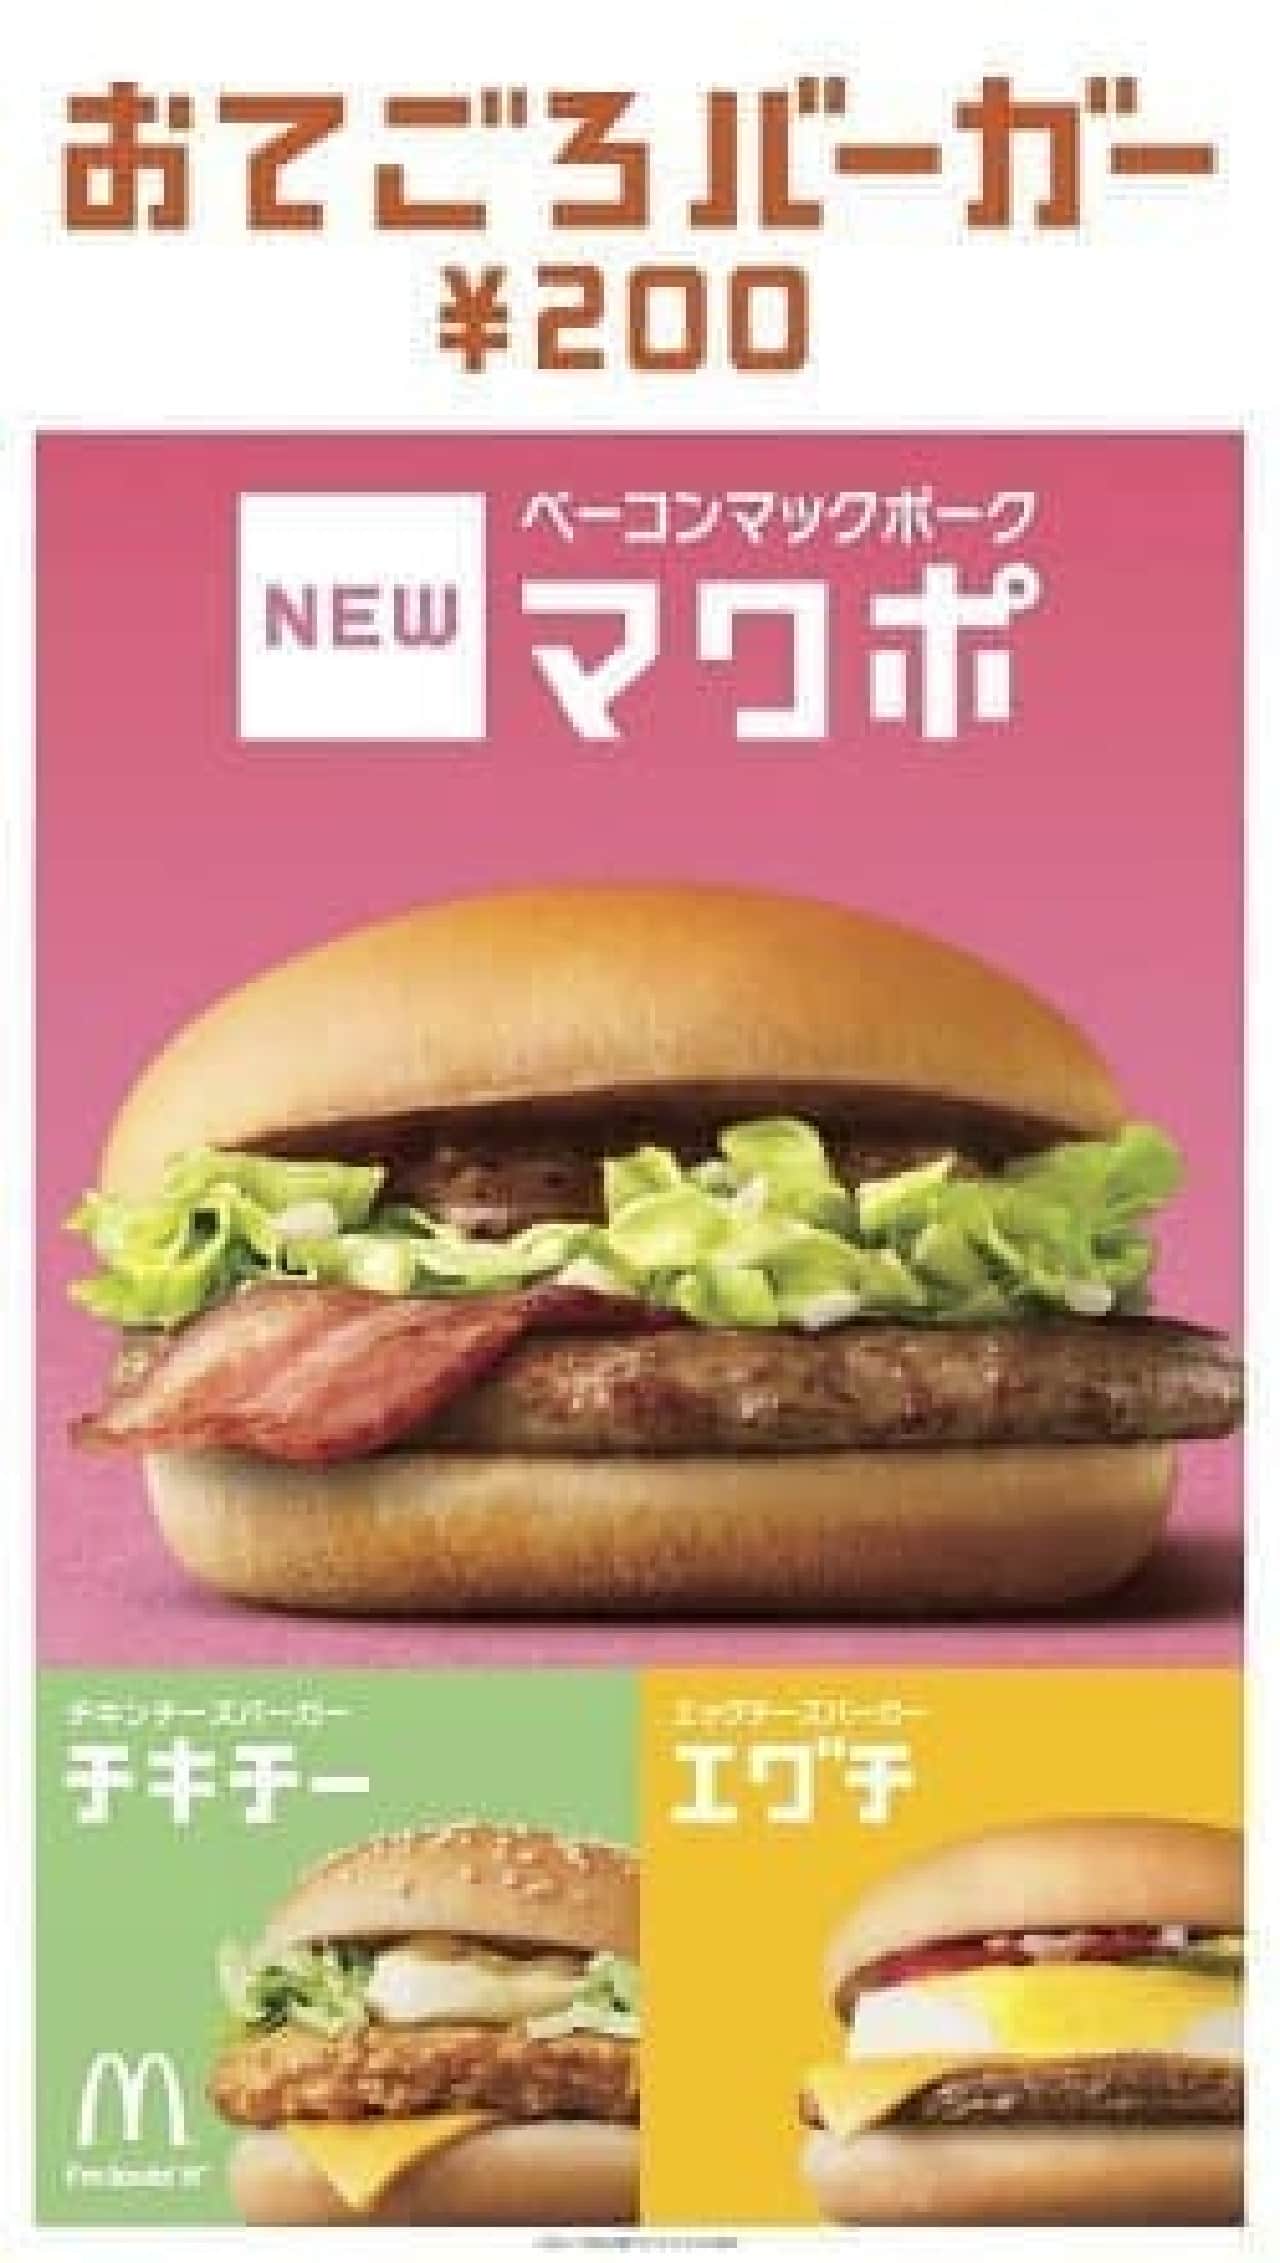 McDonald's "Bacon Mac Pork"